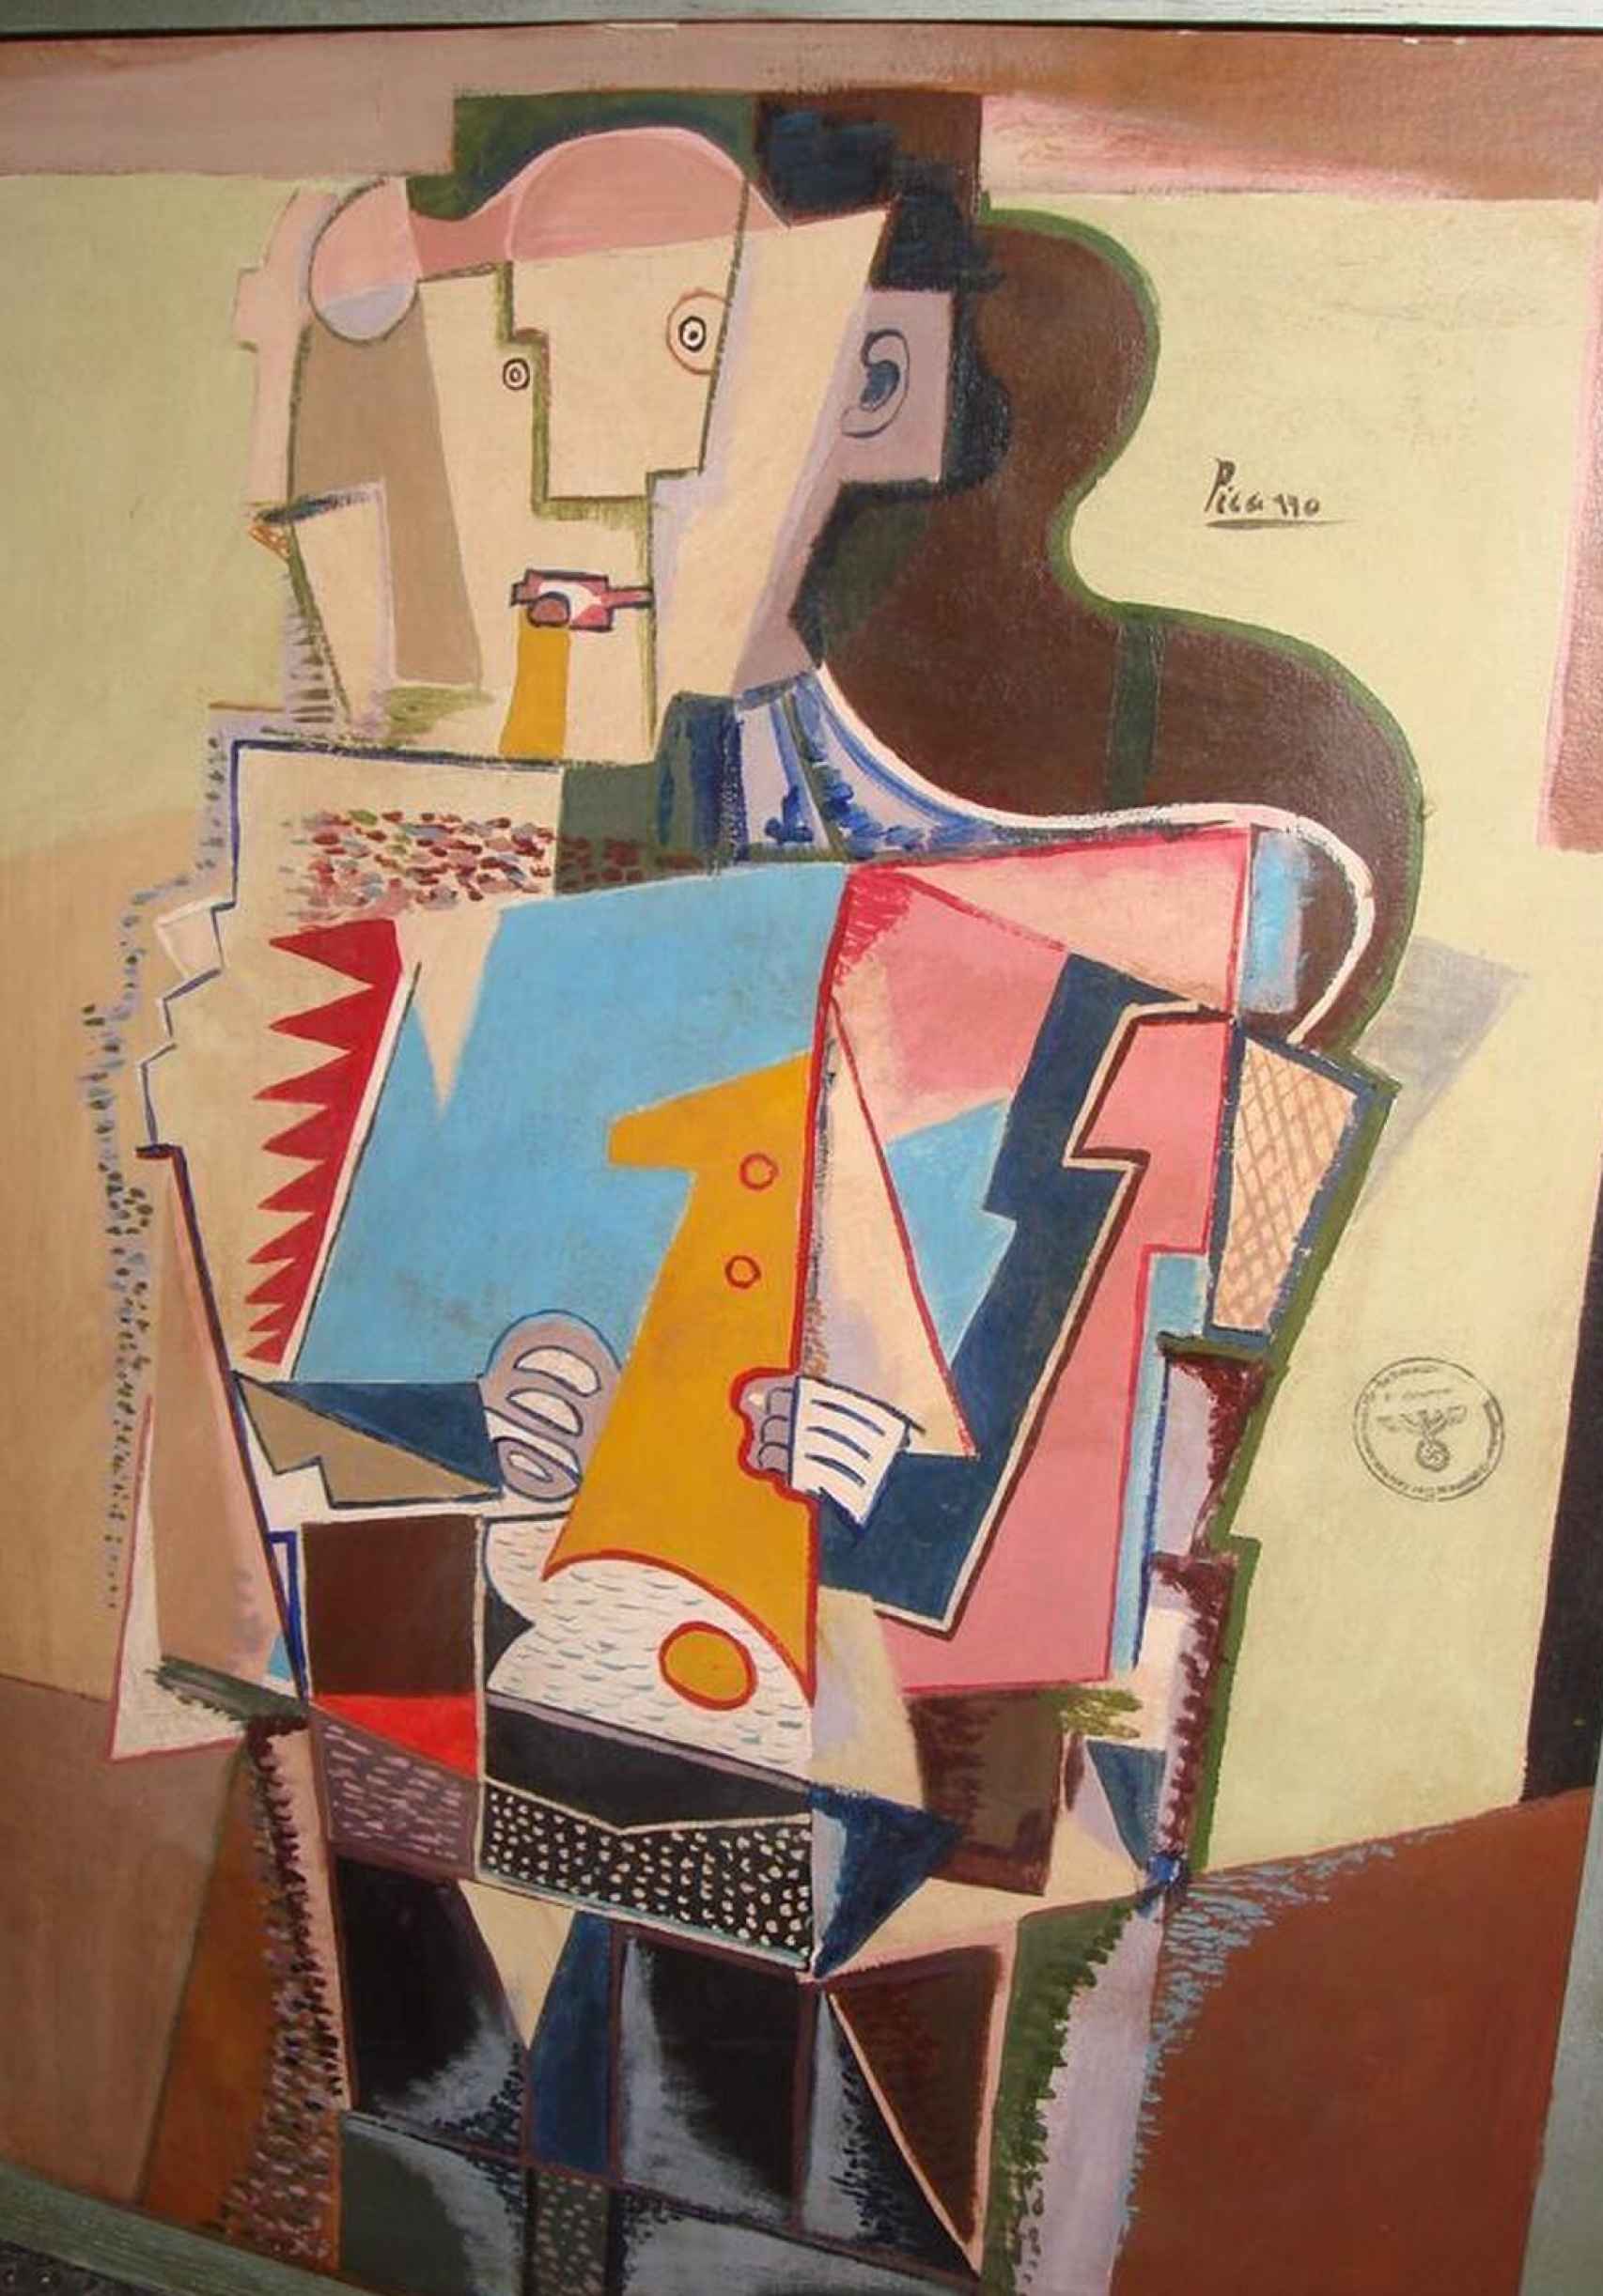 El cuadro de un flautista pintado por Picasso, supuestamente, e incautado por los nazis.